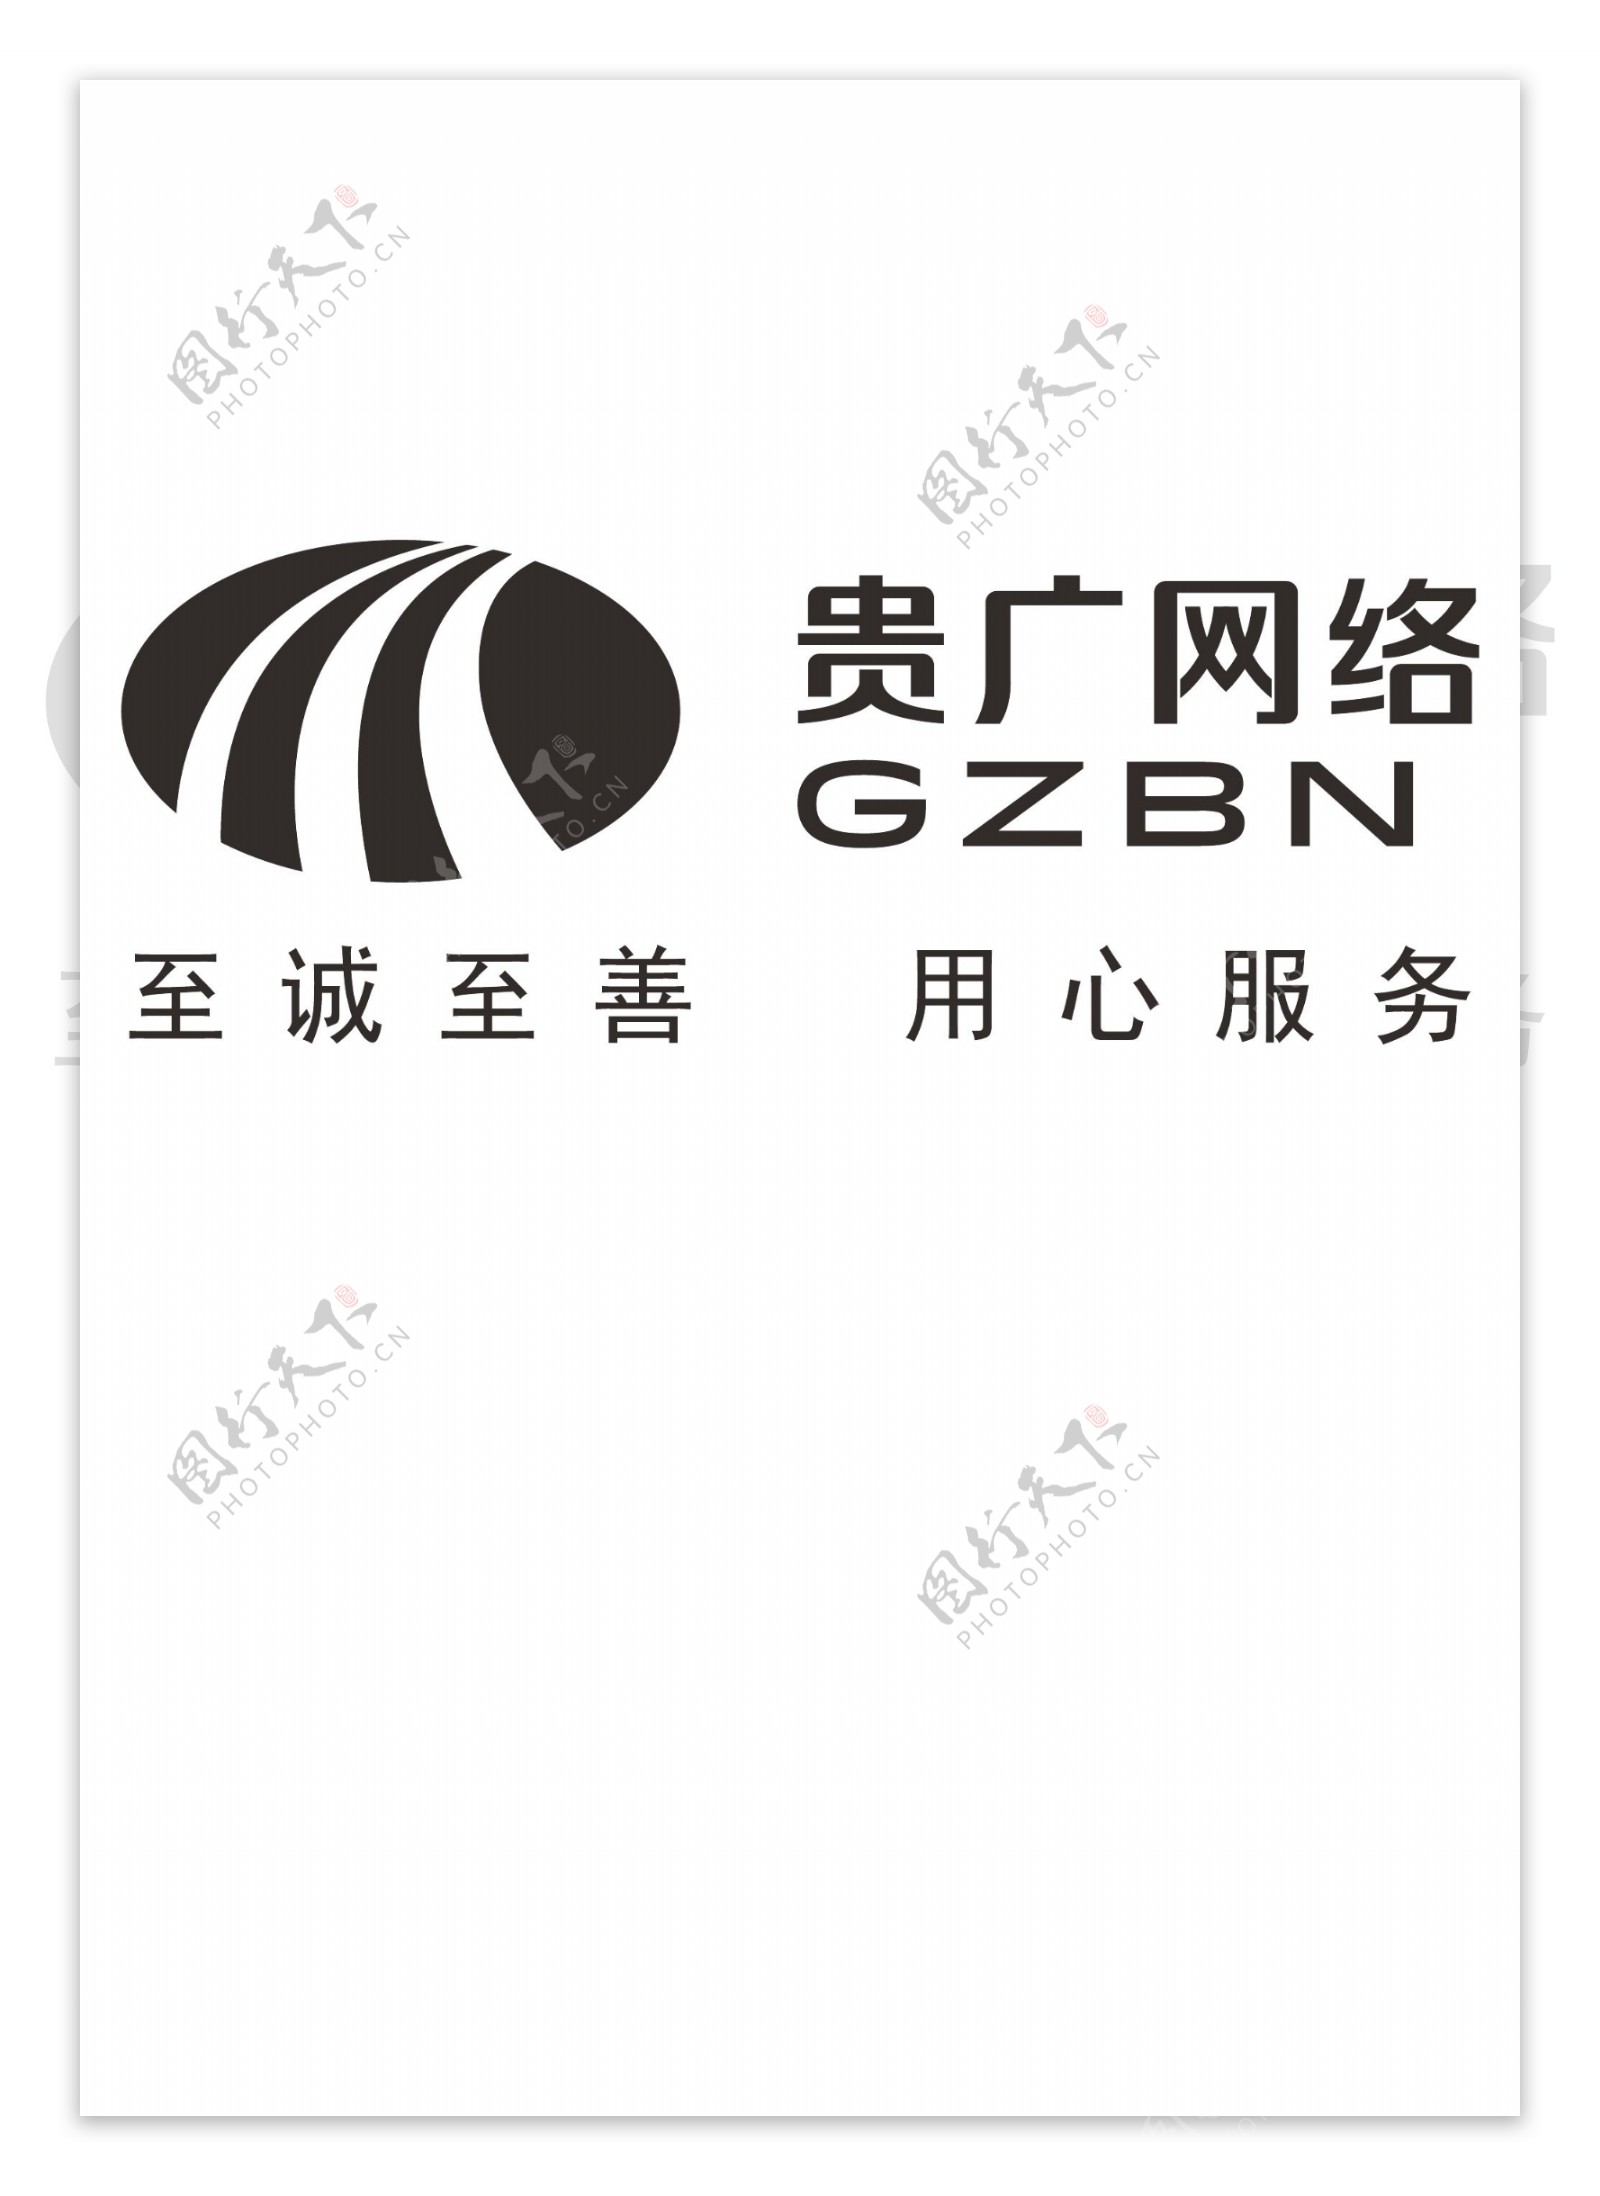 贵广网络GZBN